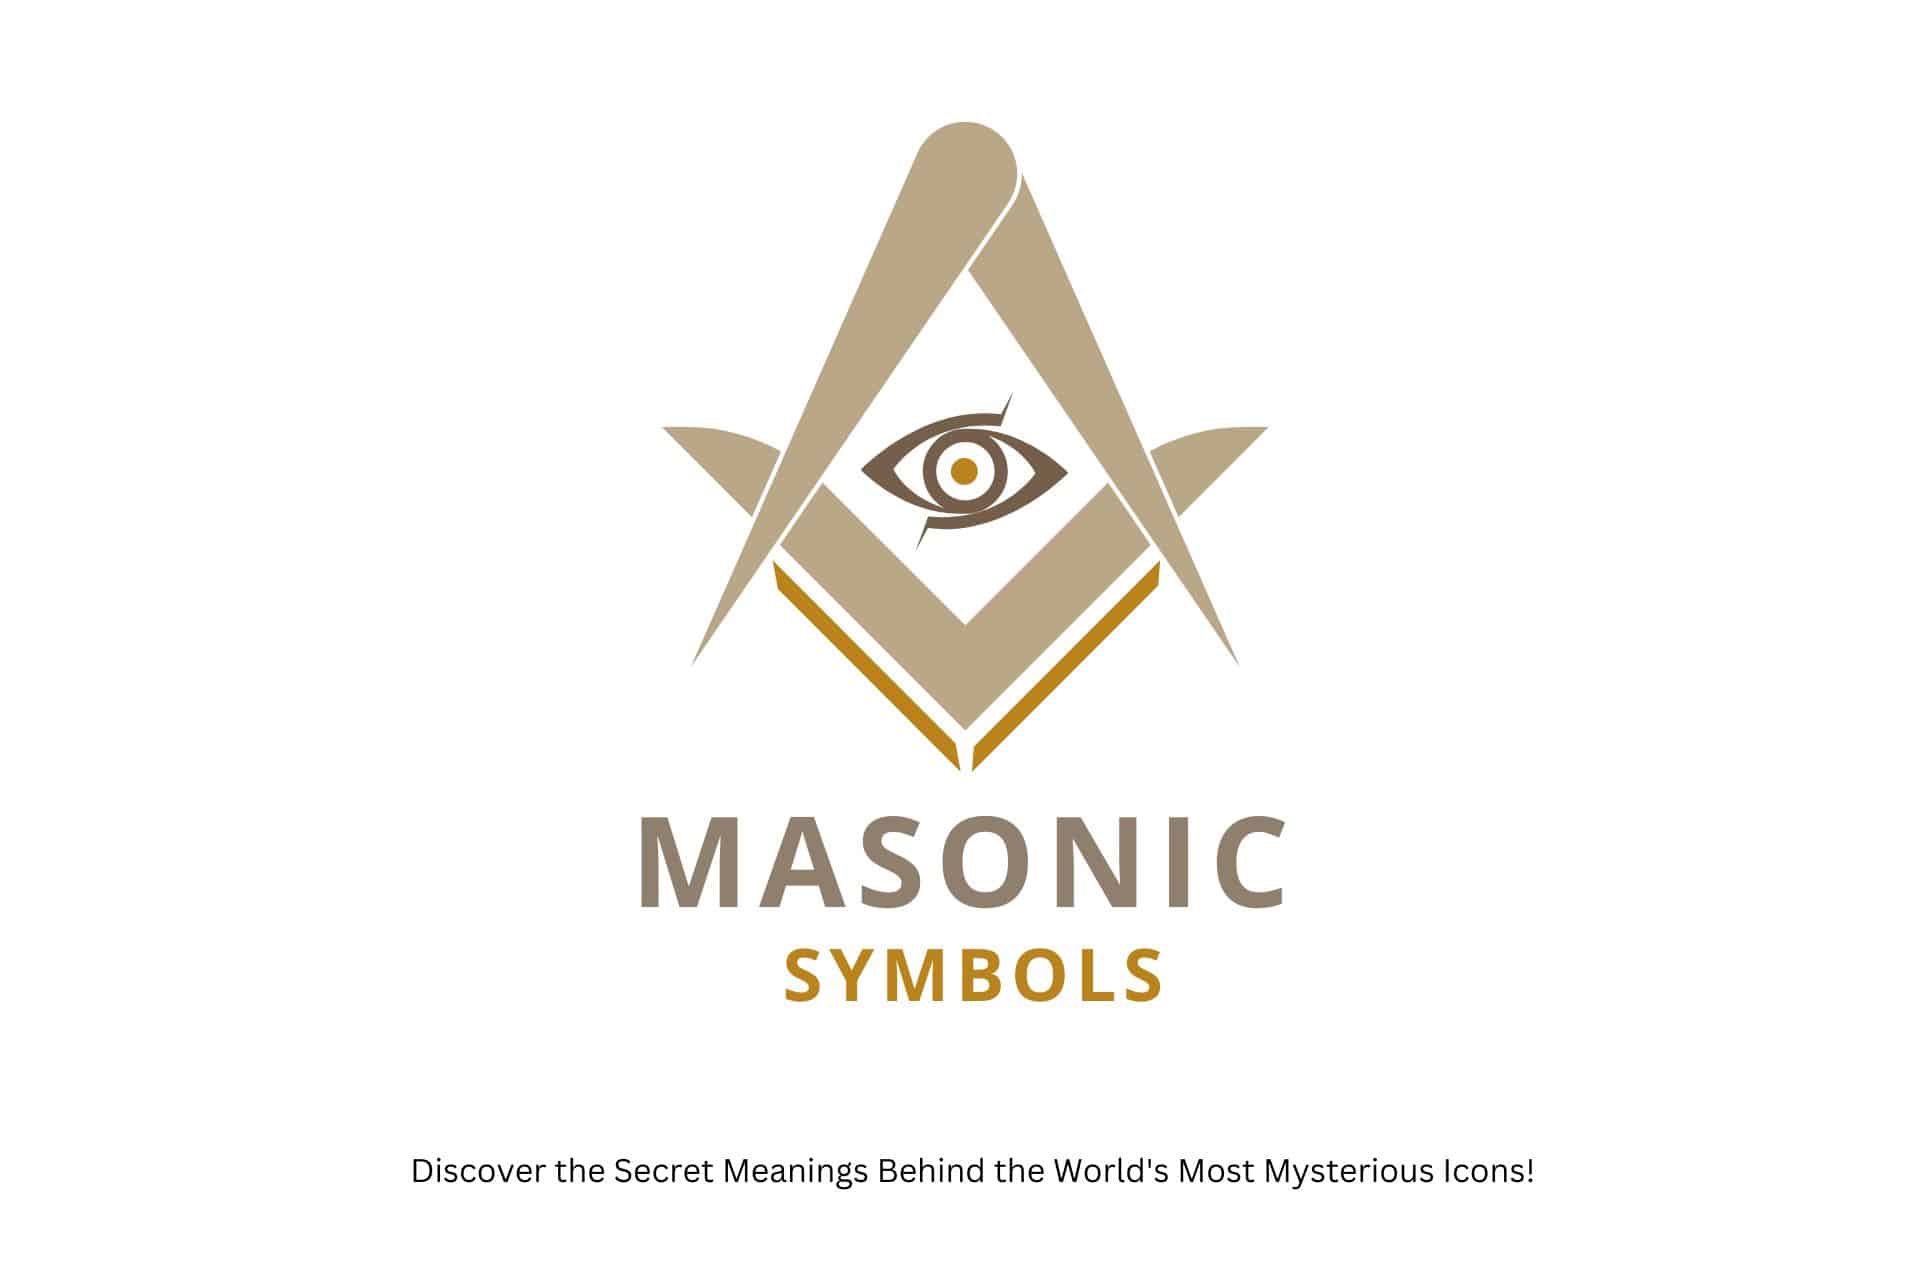 Masonic symbols